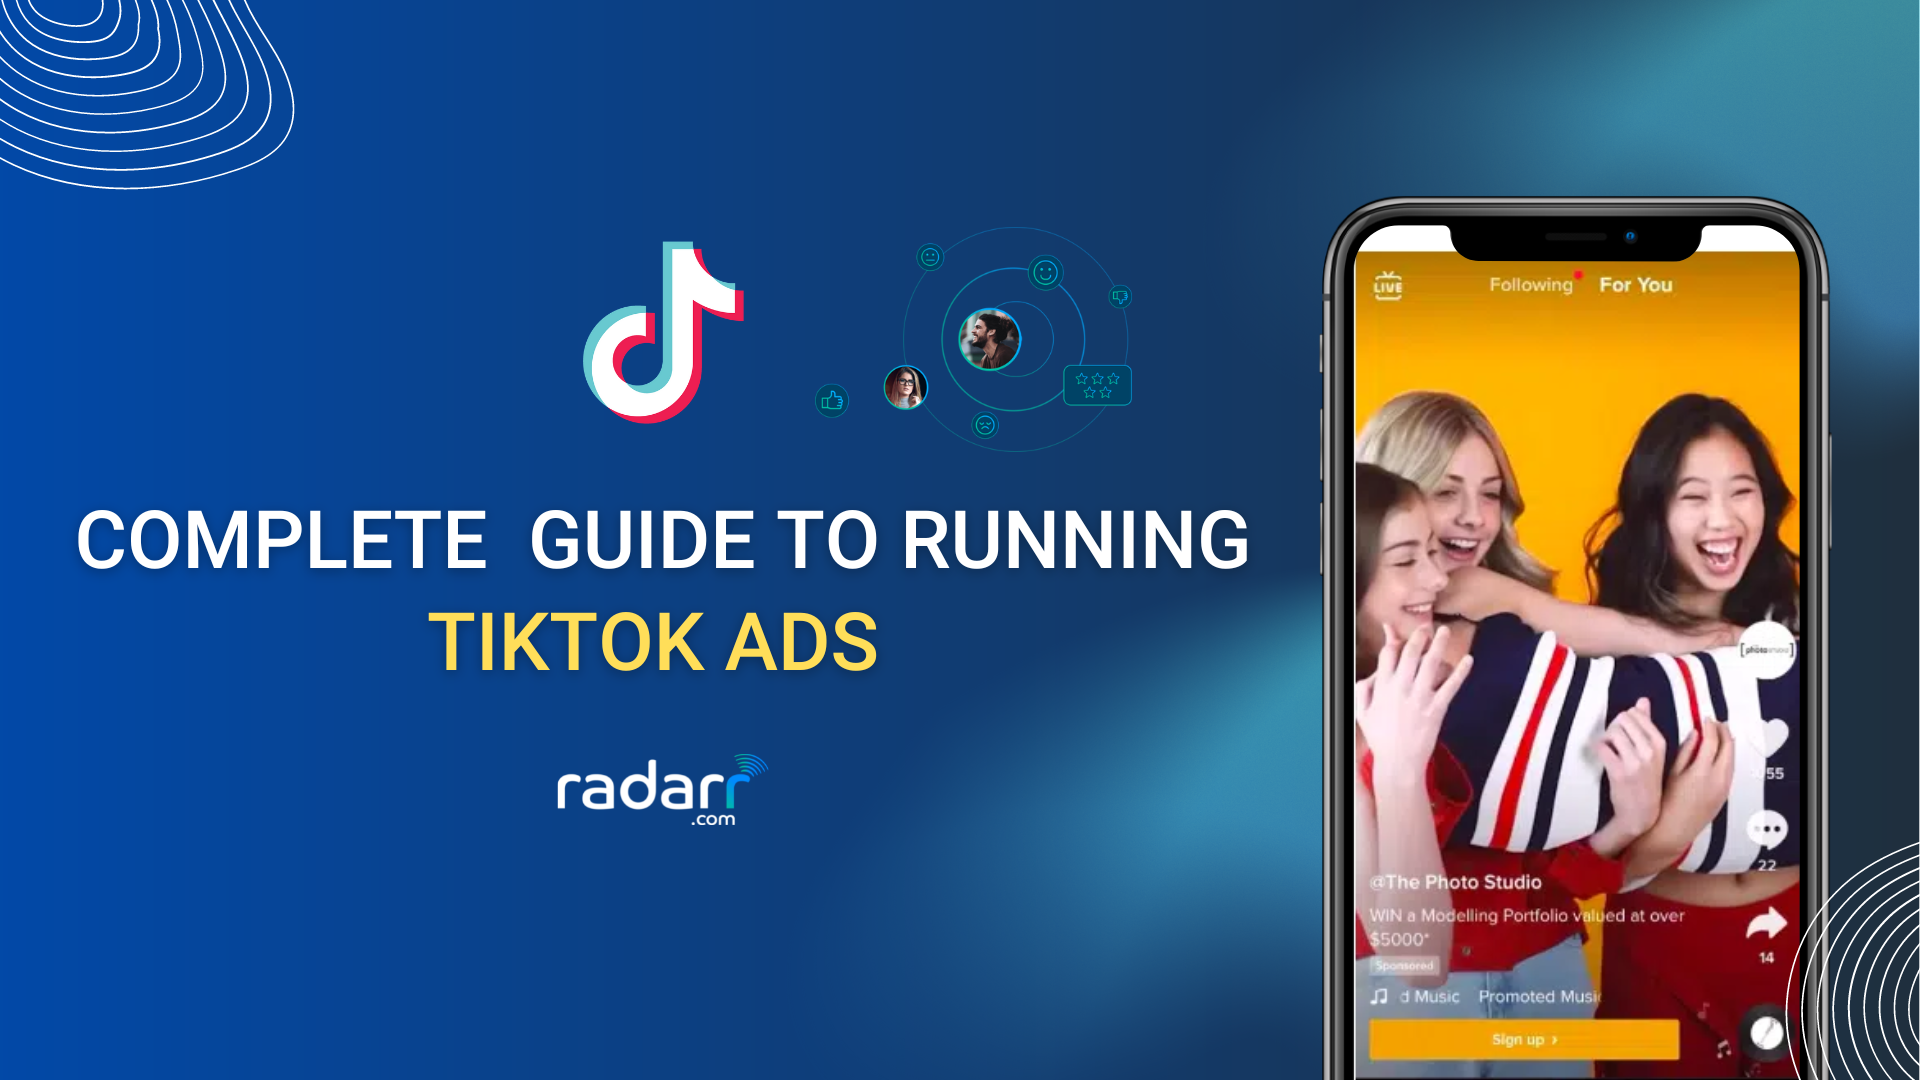 tiktok ads guide for businesses